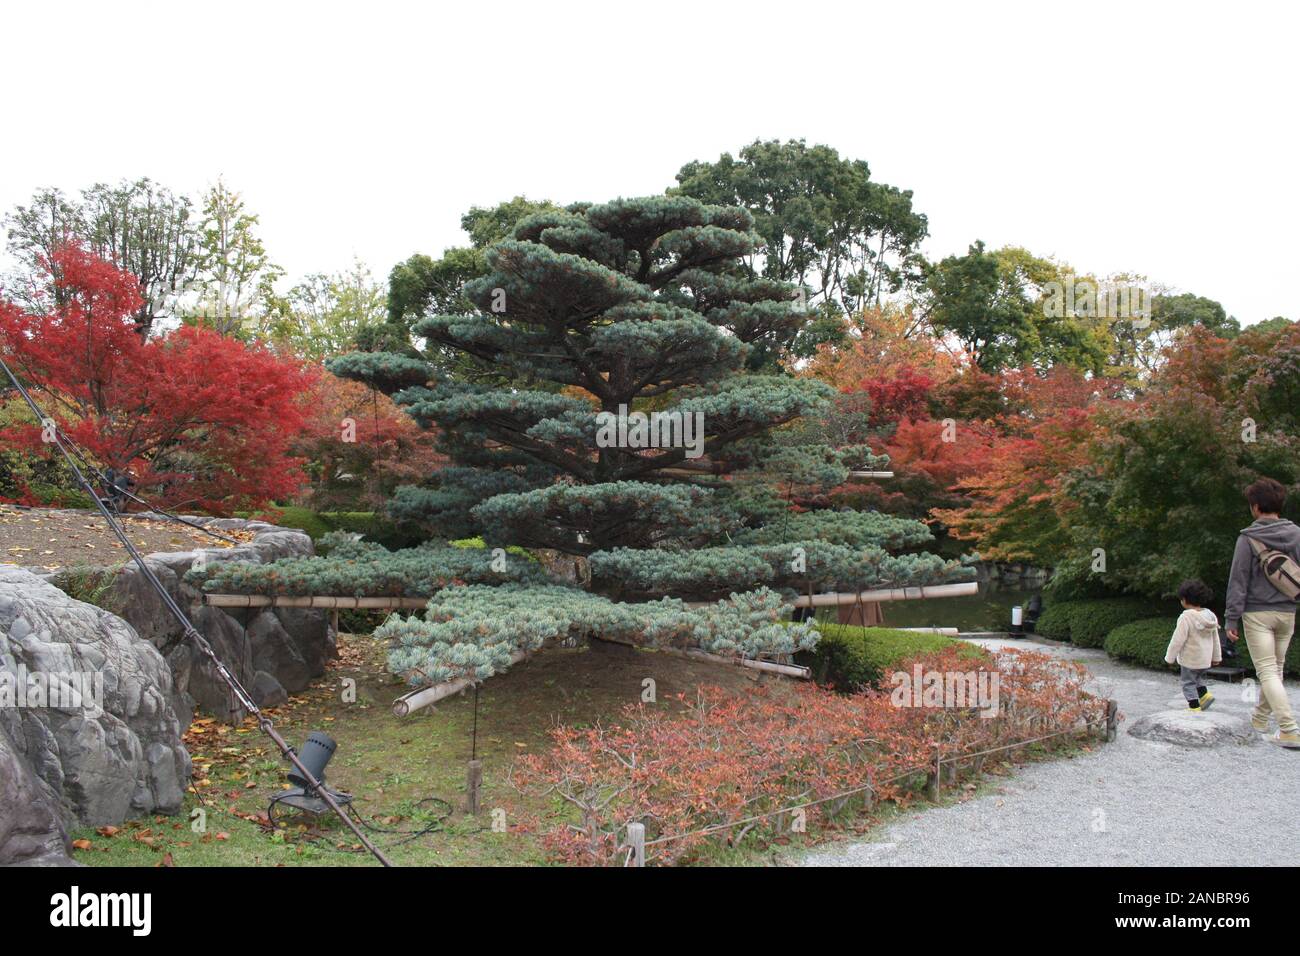 Japanese pine tree, Toji Temple, Kyoto, Japan Stock Photo